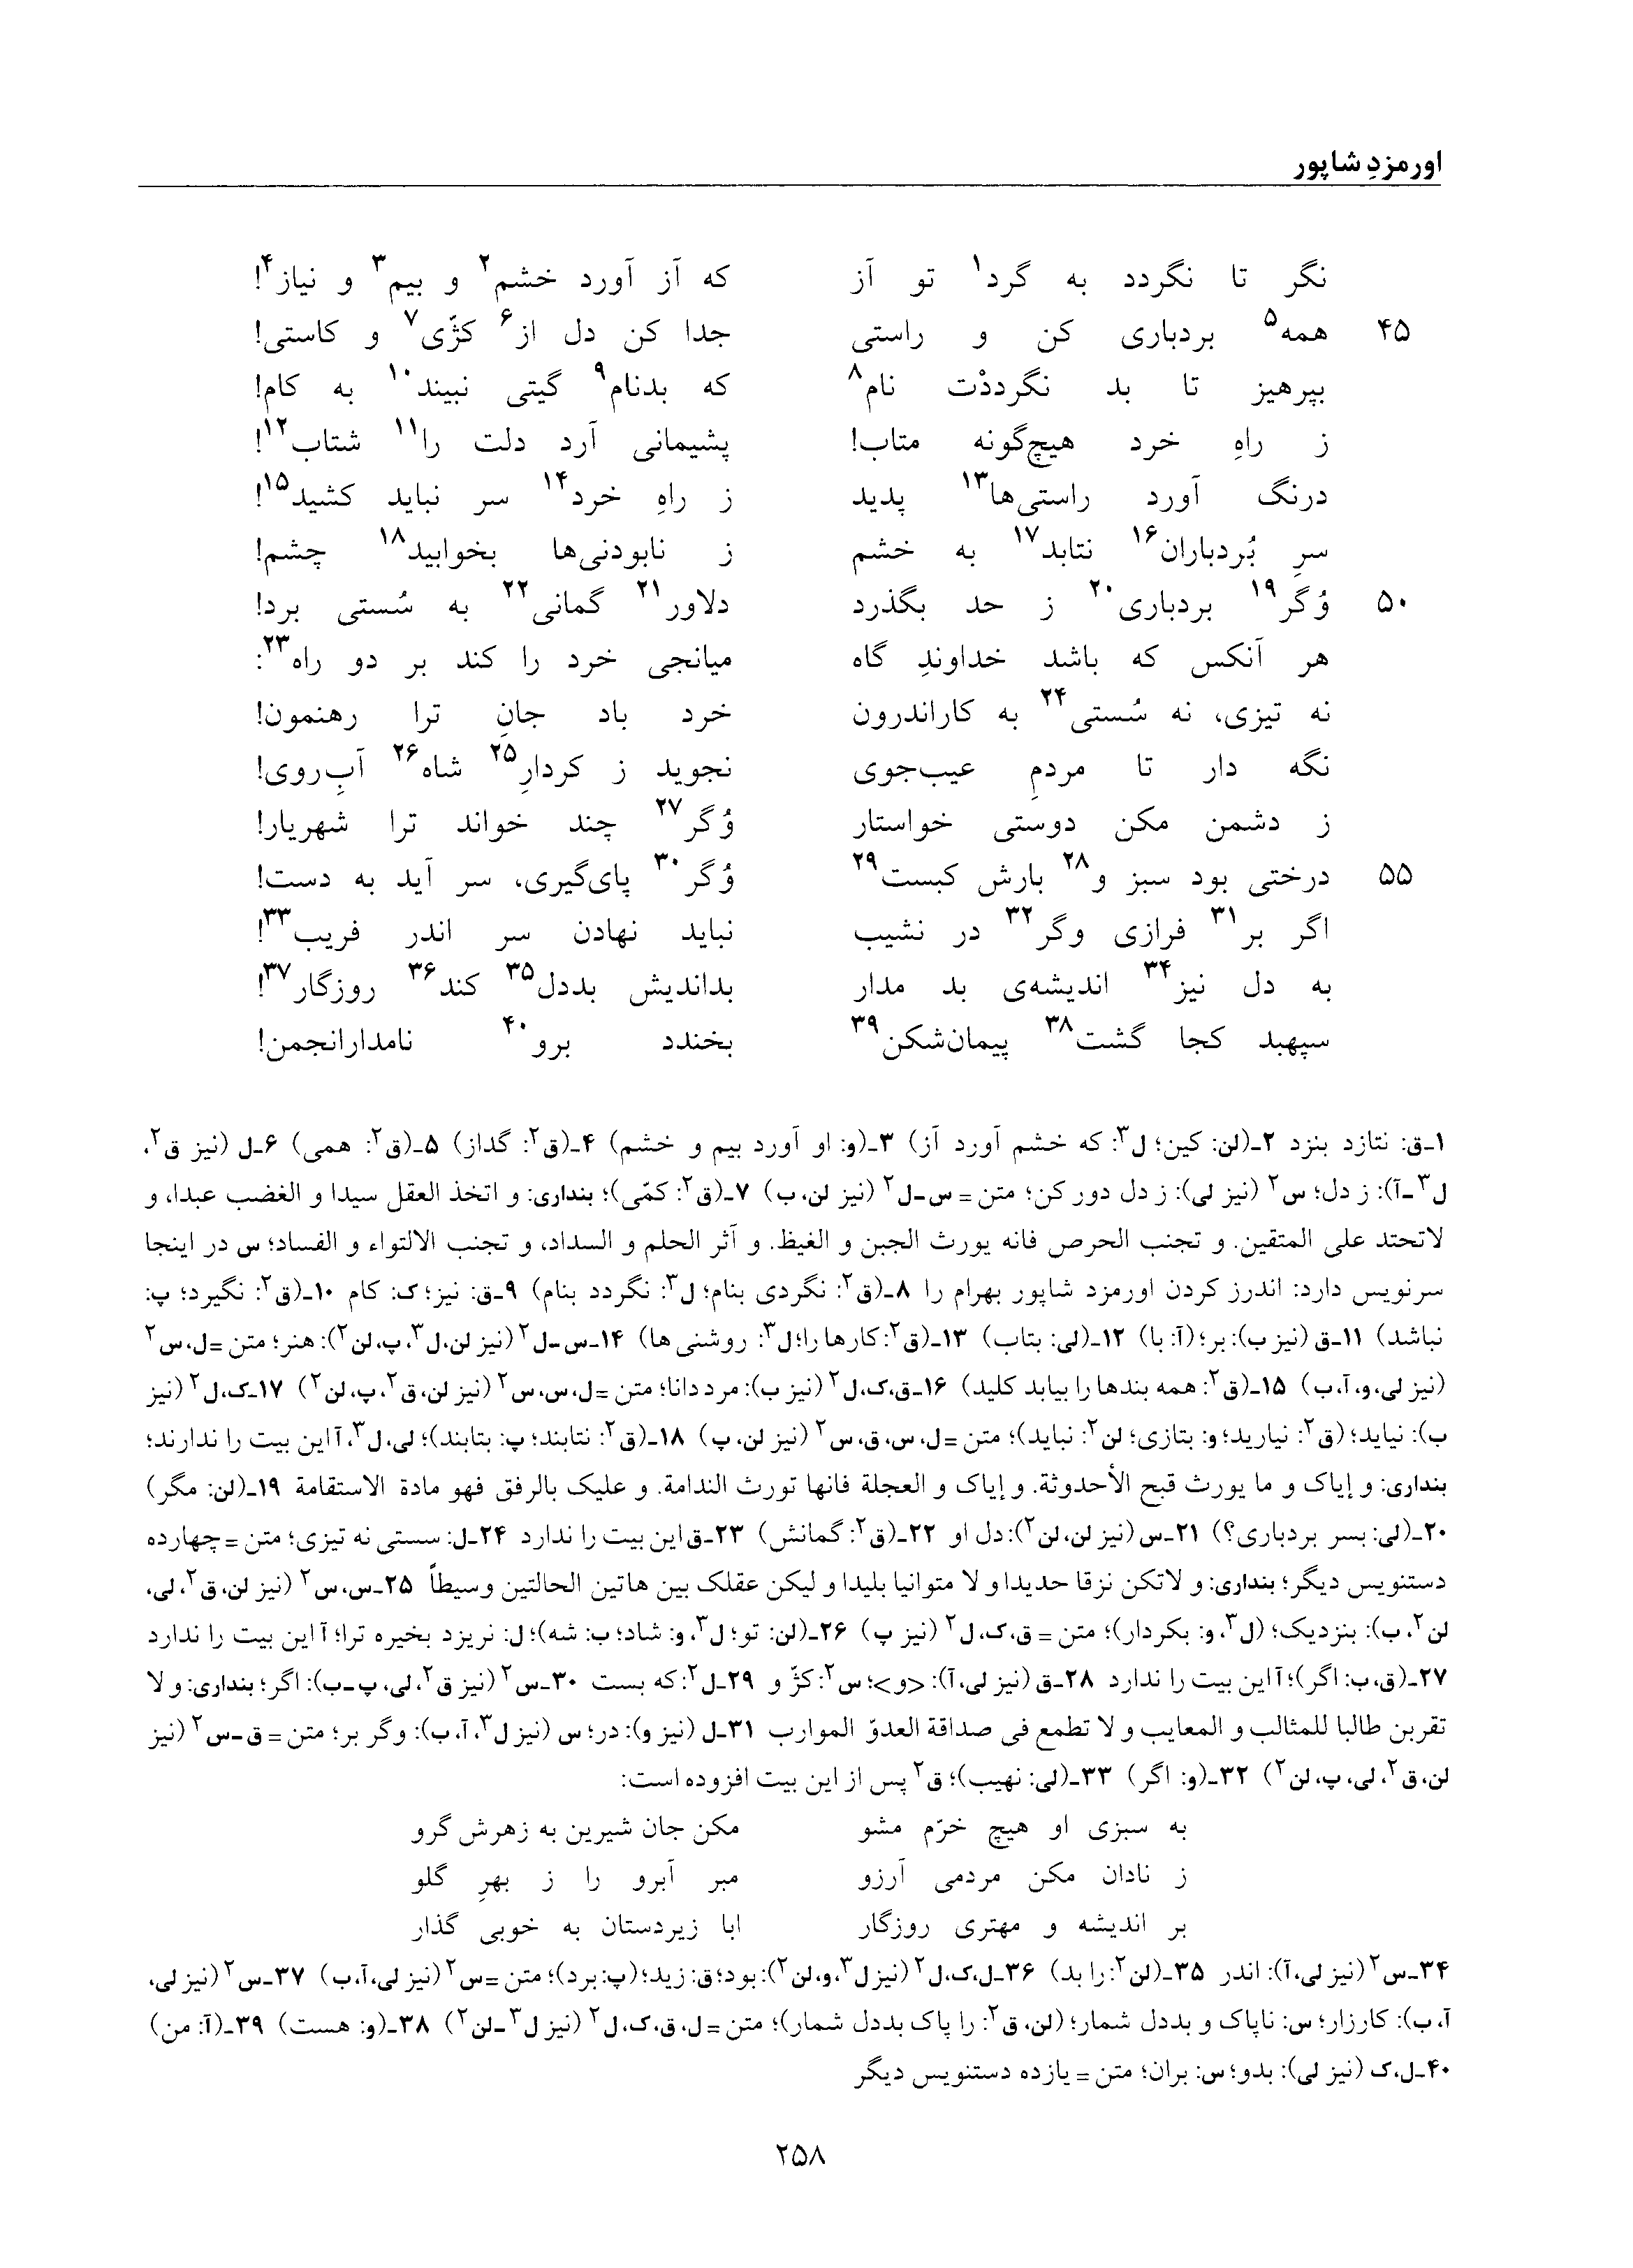 vol. 6, p. 258